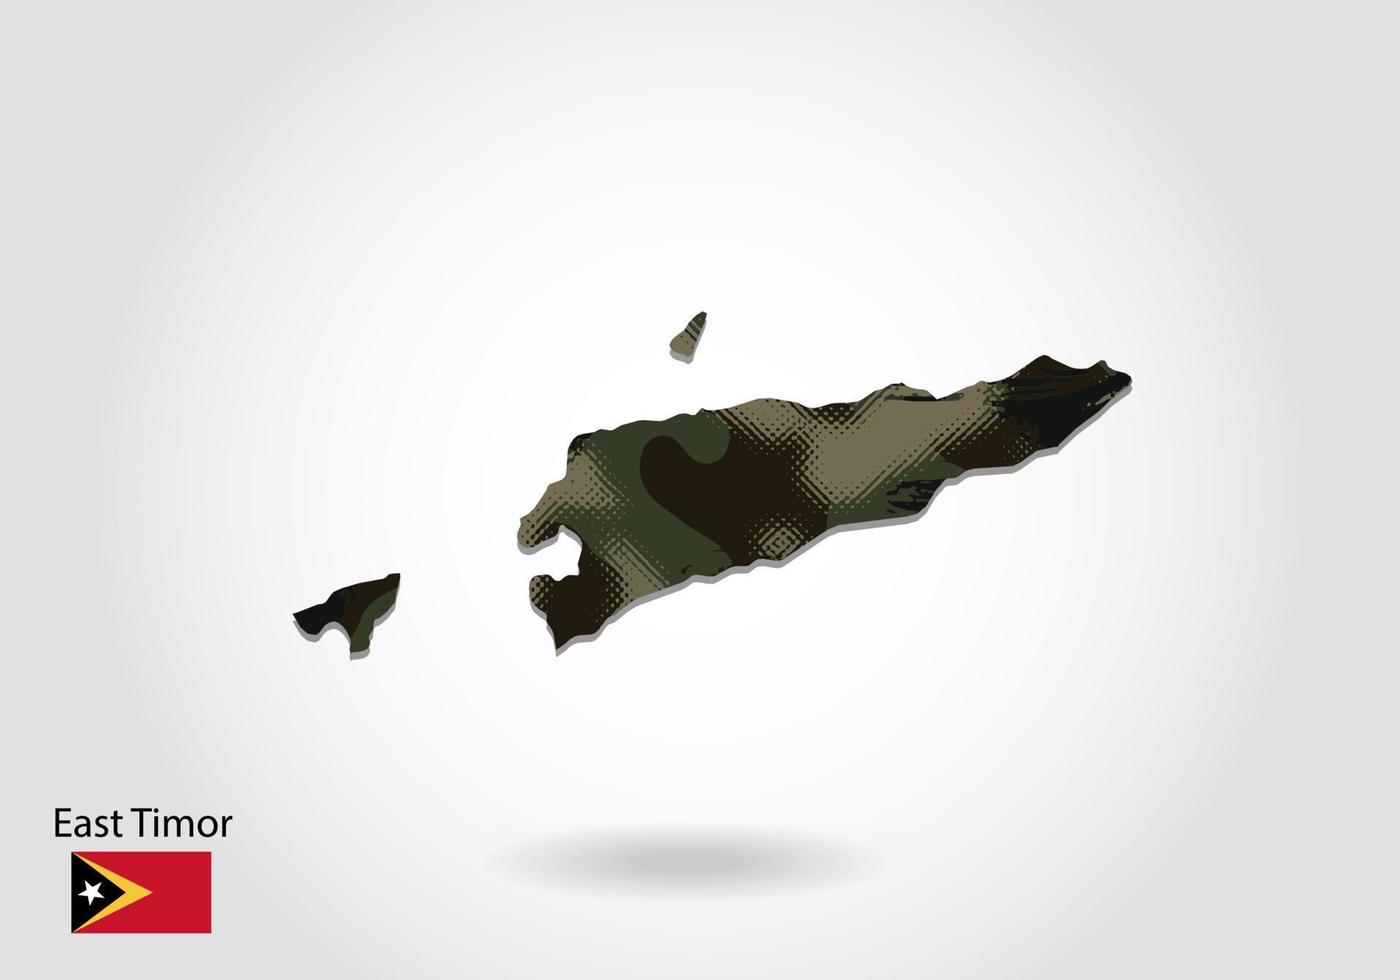 mappa di timor orientale con motivo mimetico, foresta - trama verde nella mappa. concetto militare per esercito, soldato e guerra. stemma, bandiera. vettore